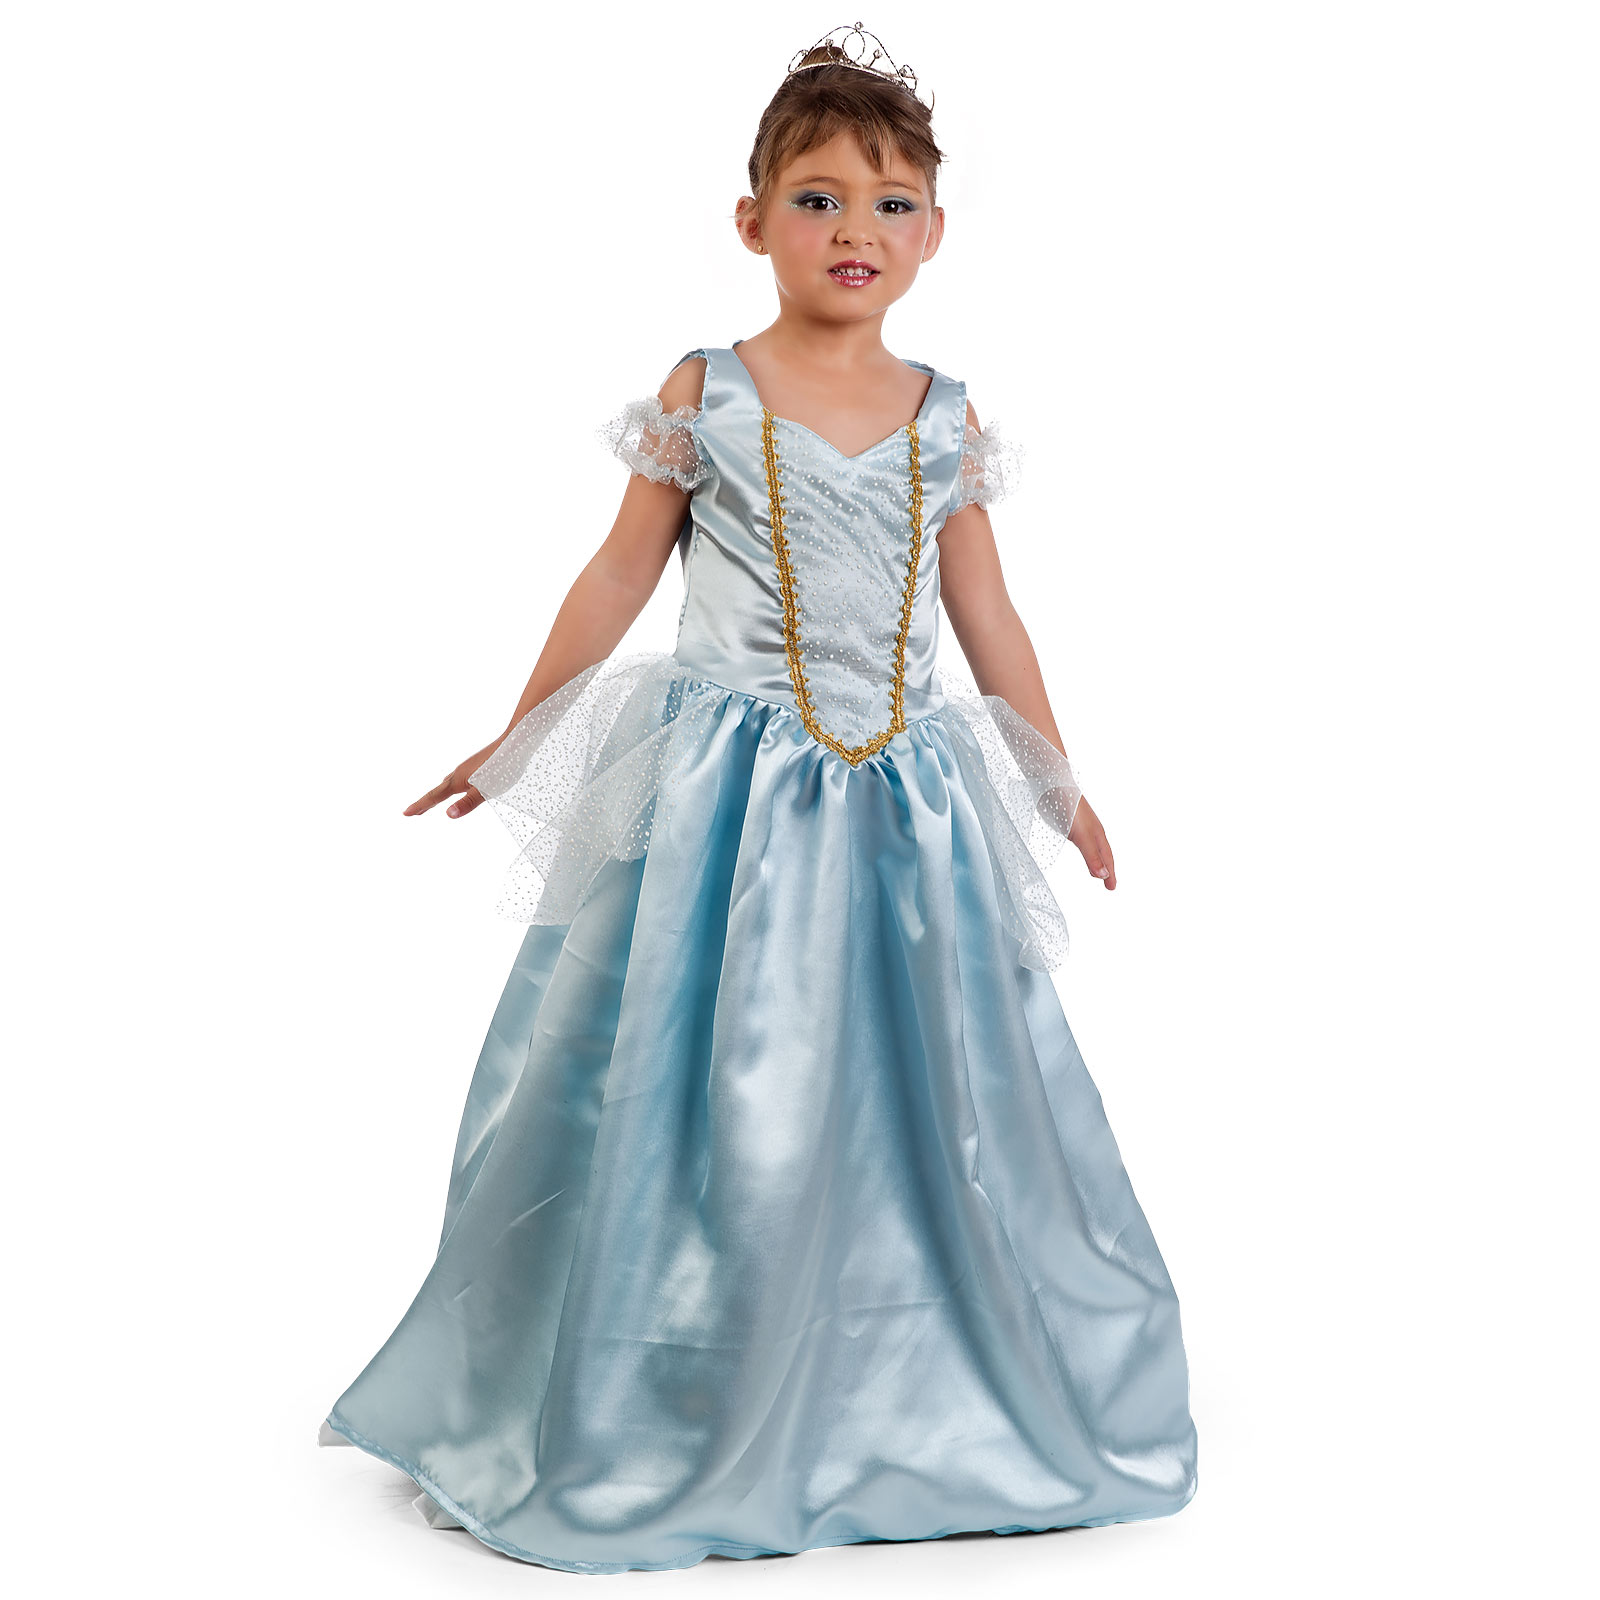 Cinderella Prinzessin Kleid türkis - Kostüm Kinder